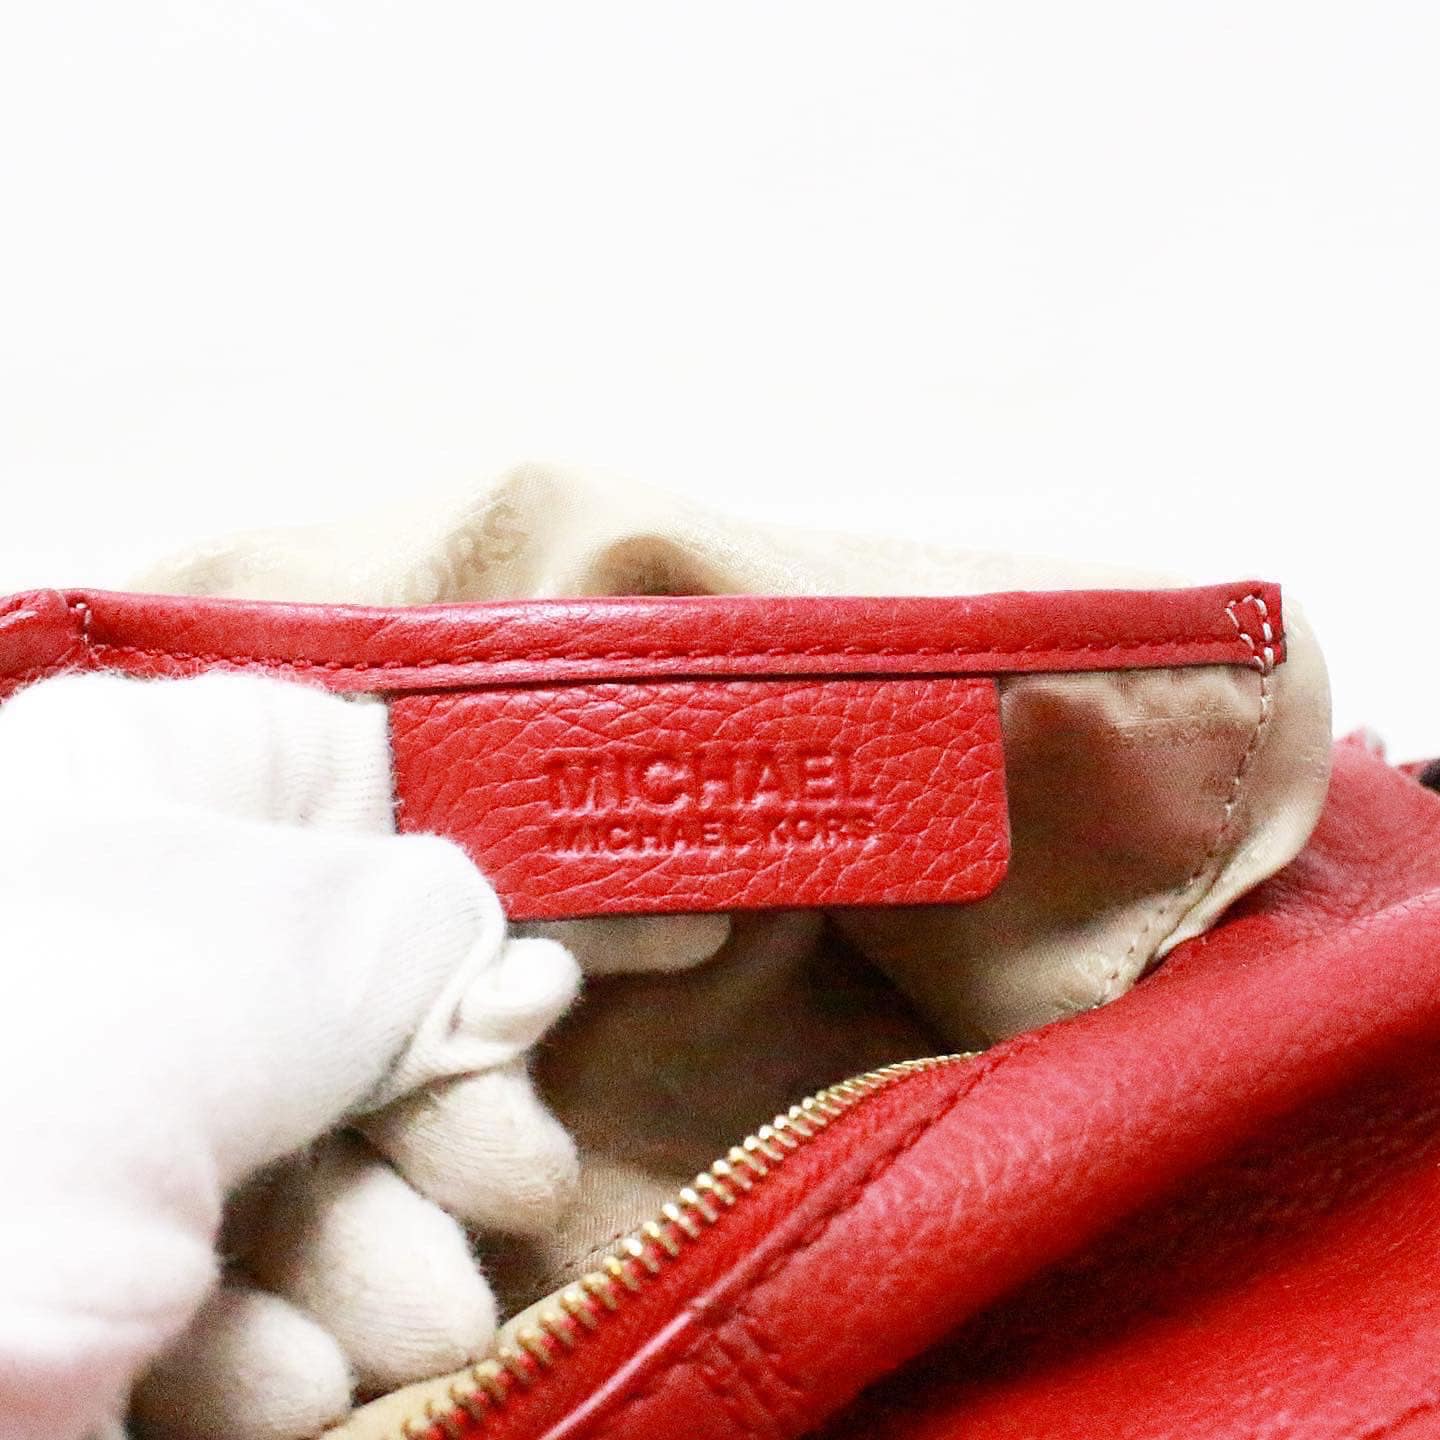 Michael Kors Red Shoulder Bag item #40323